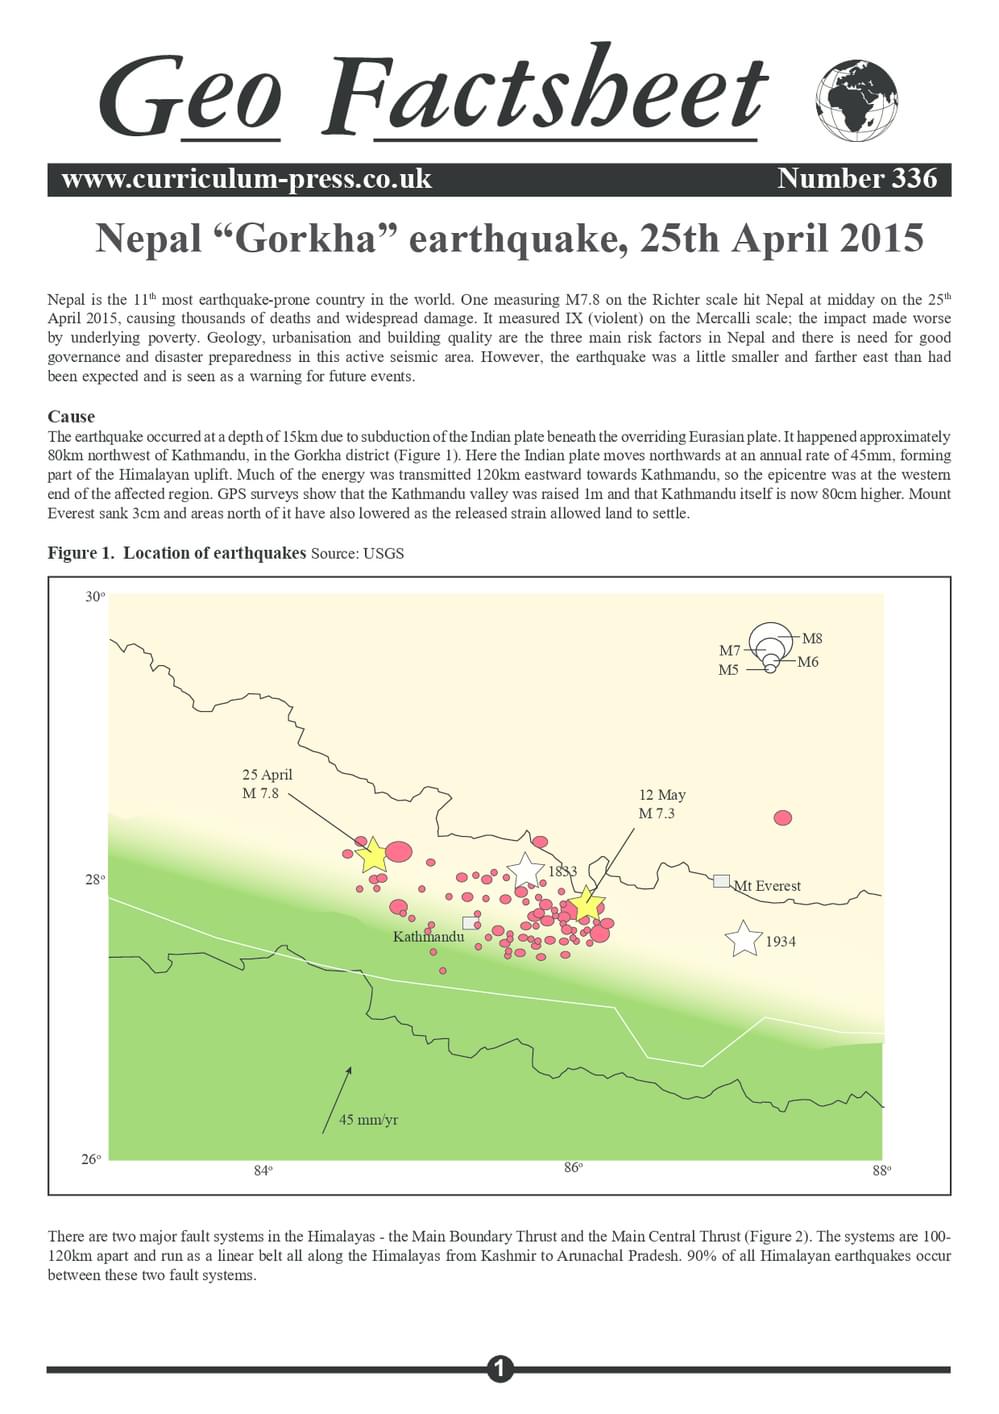 336 Nepal “Gorkha” Earthquake